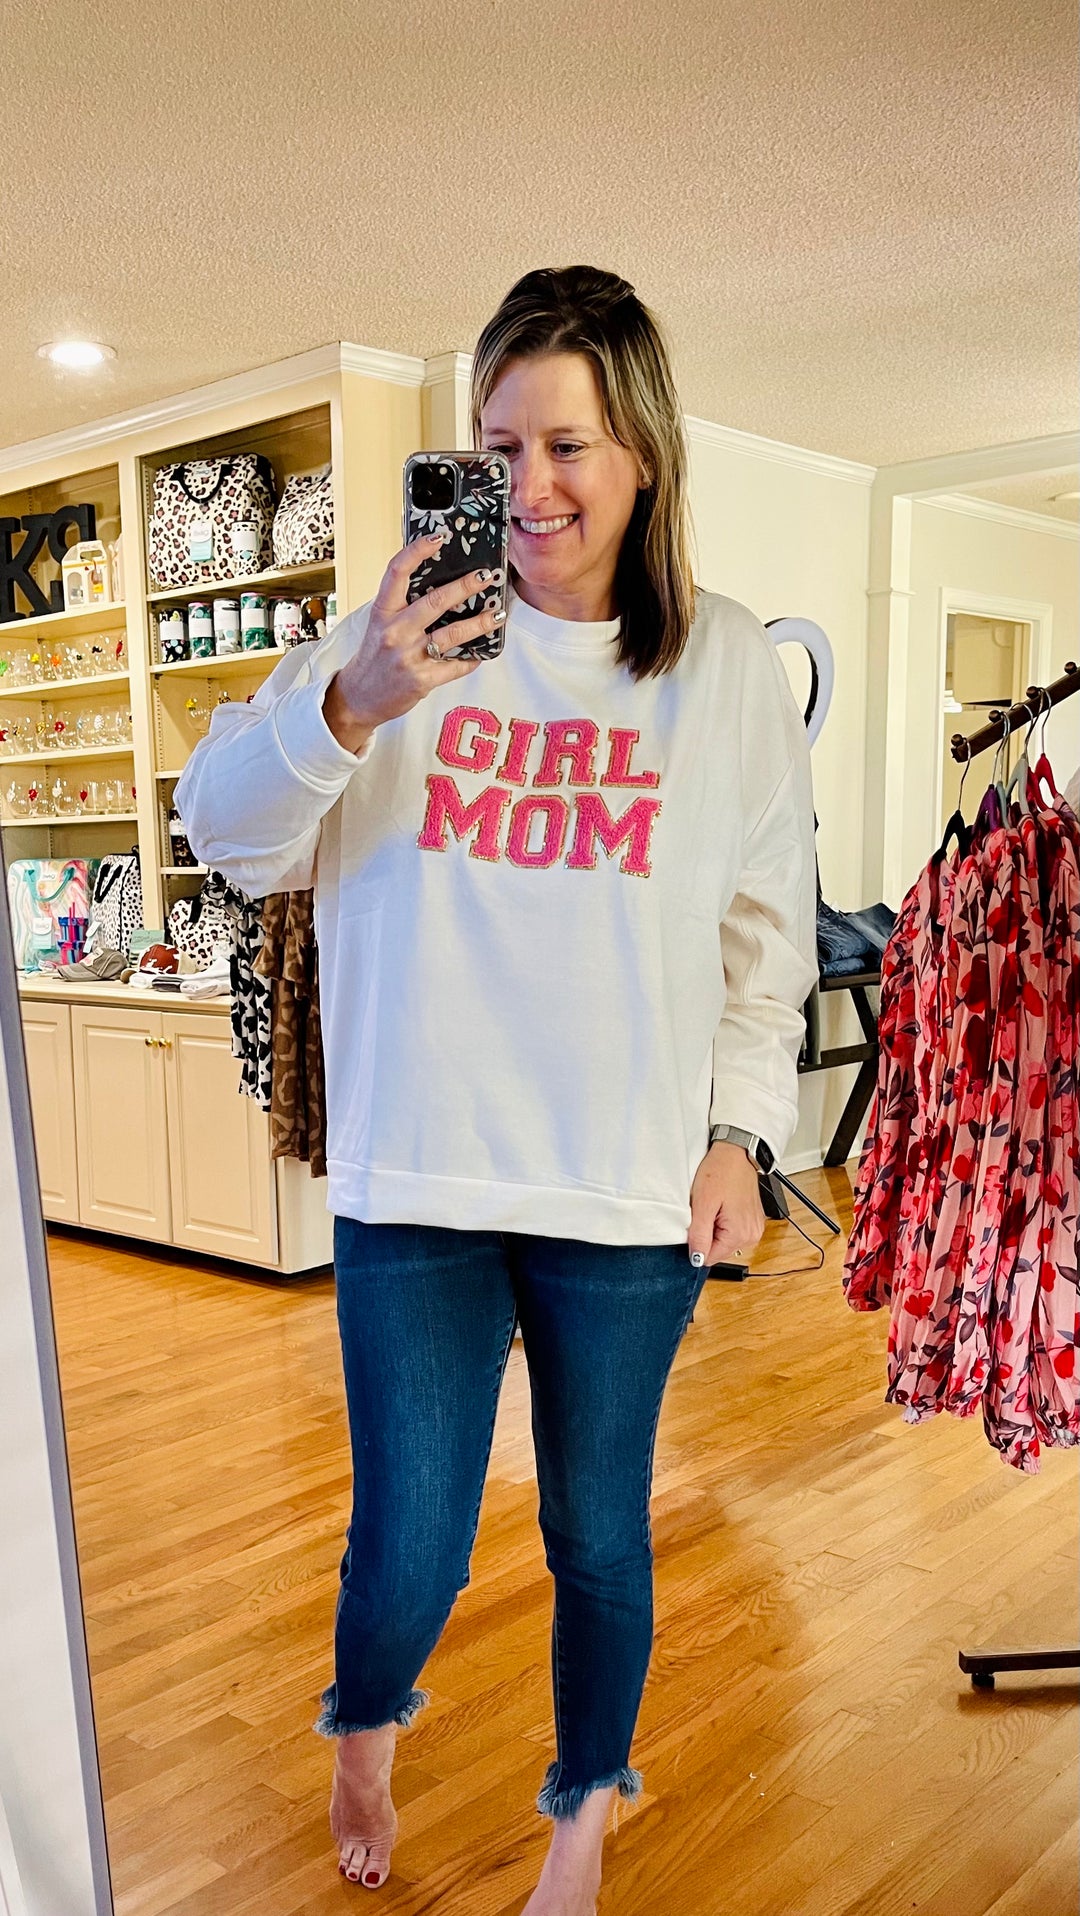 Girl Mom sweatshirt